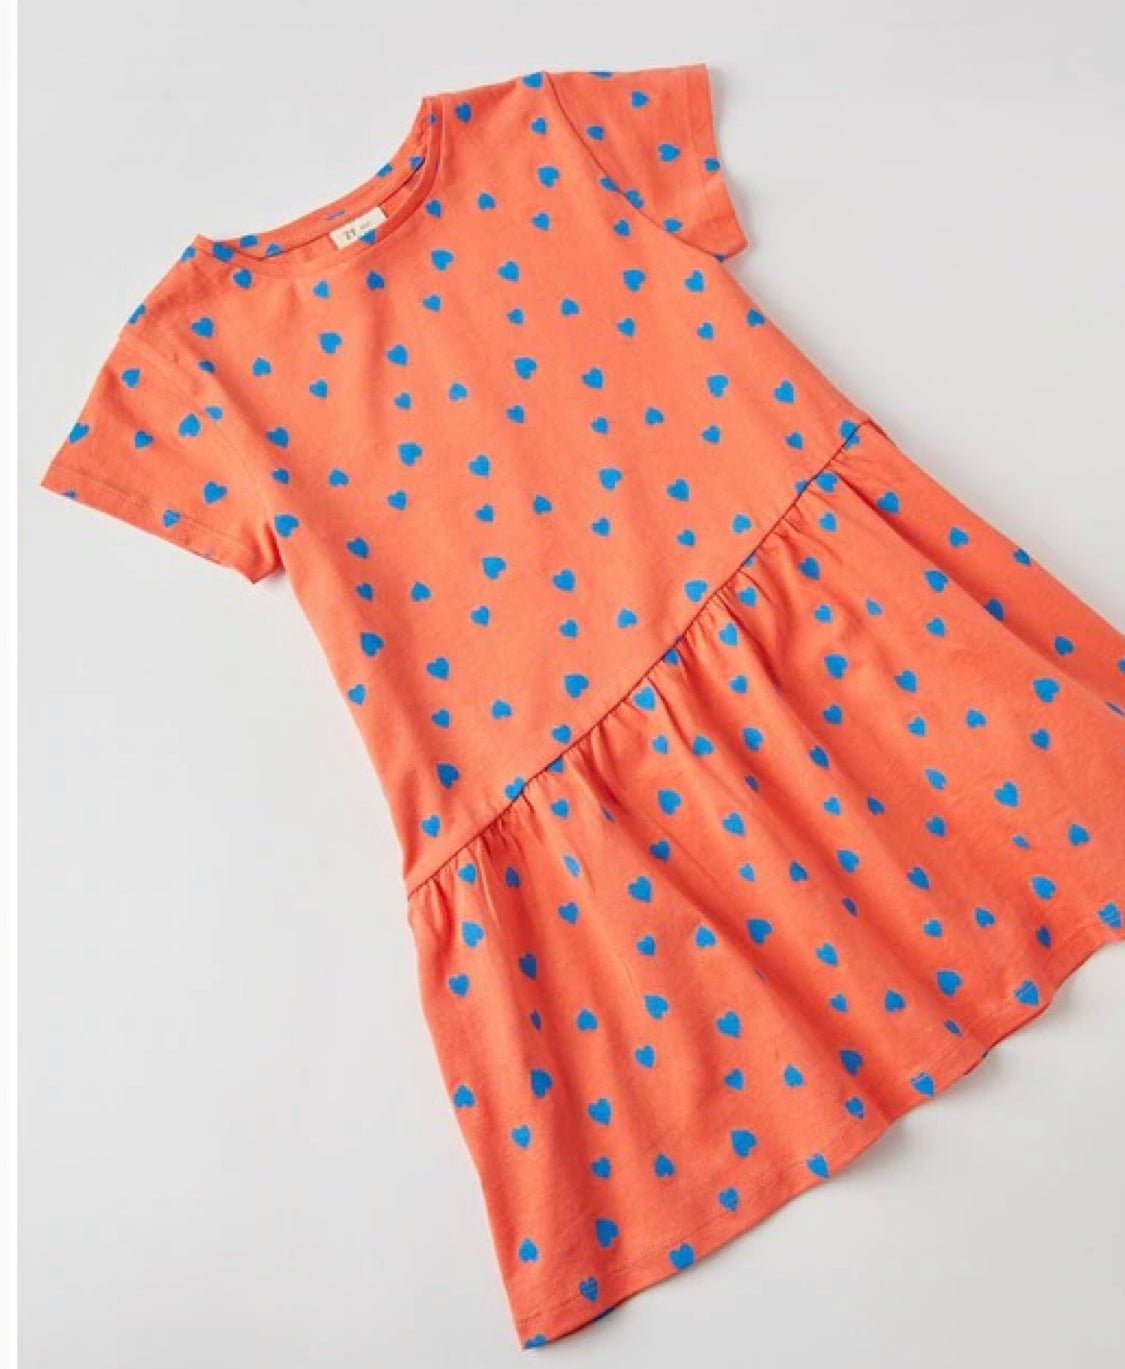 Vestido de niña en naranja con motivos de corazones en algodón 100% lolimariscalmoda 9.99